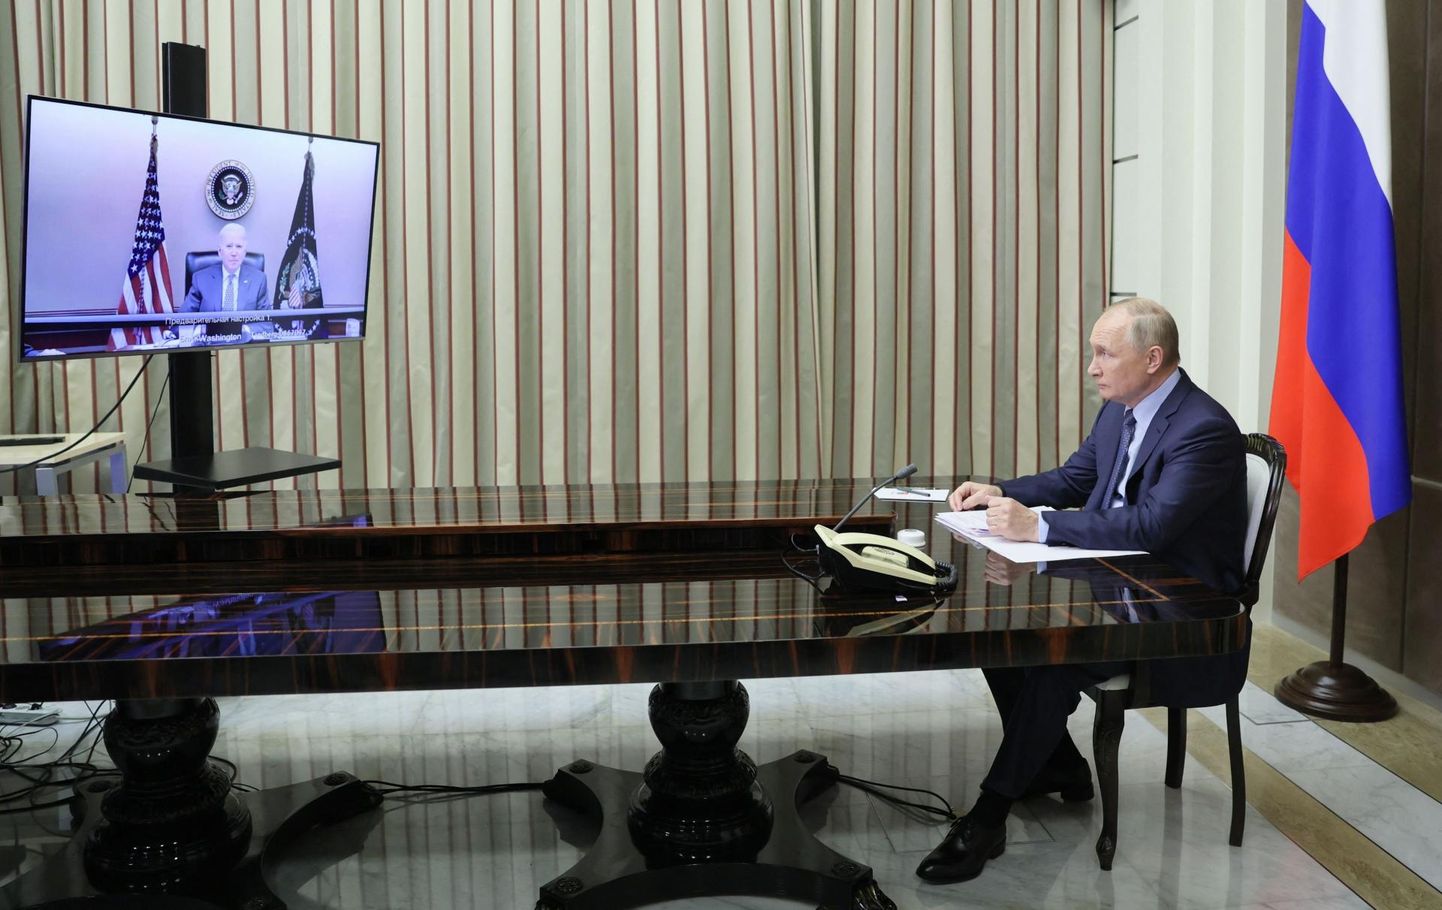 Vladimir Putin ja Joe Biden eilse videokõne alguses. Biden viibis suletud uste taga Valge Maja kriisikeskuses, Putin Sotši residentsis.